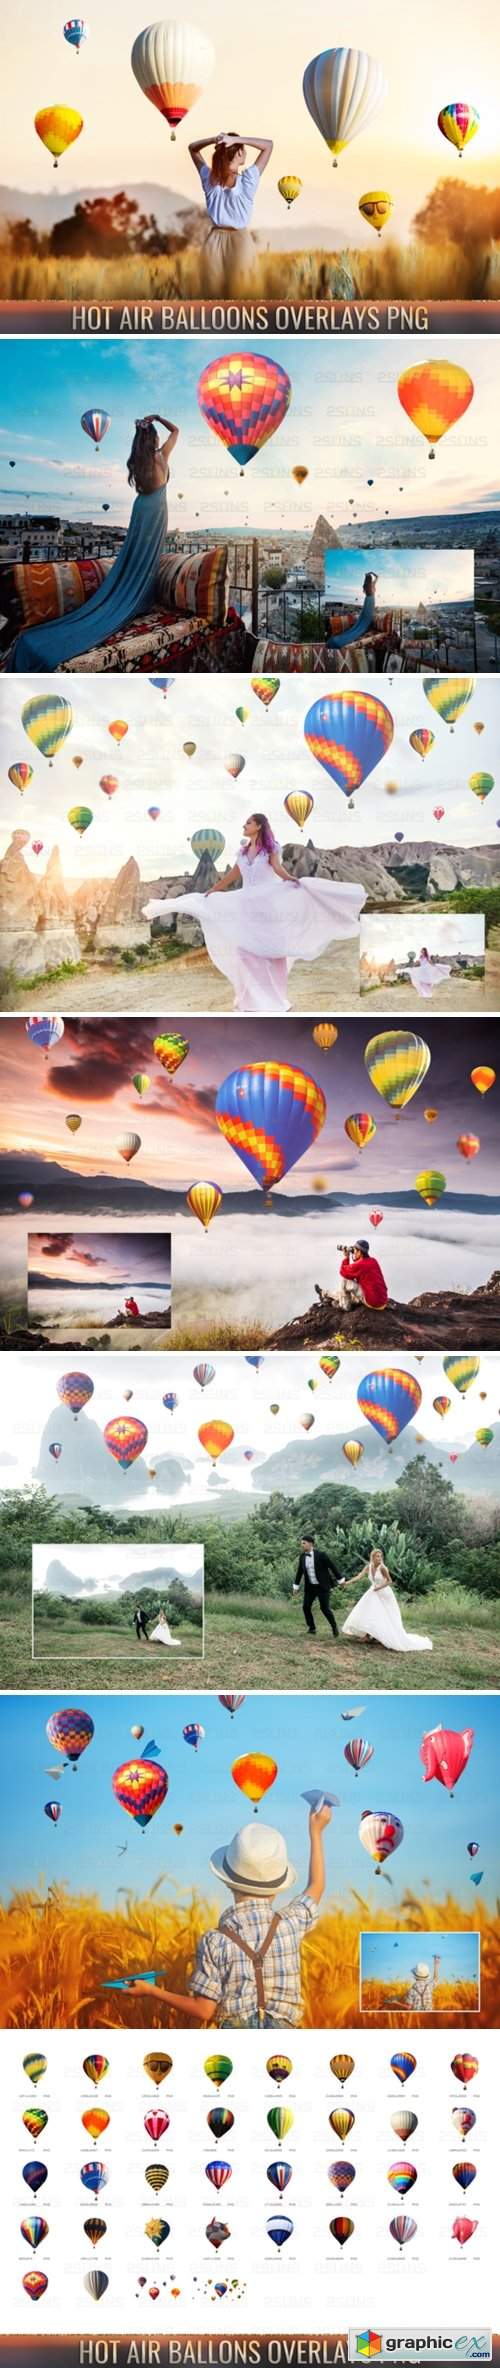 36 Hot Air Balloon Photo Overlays